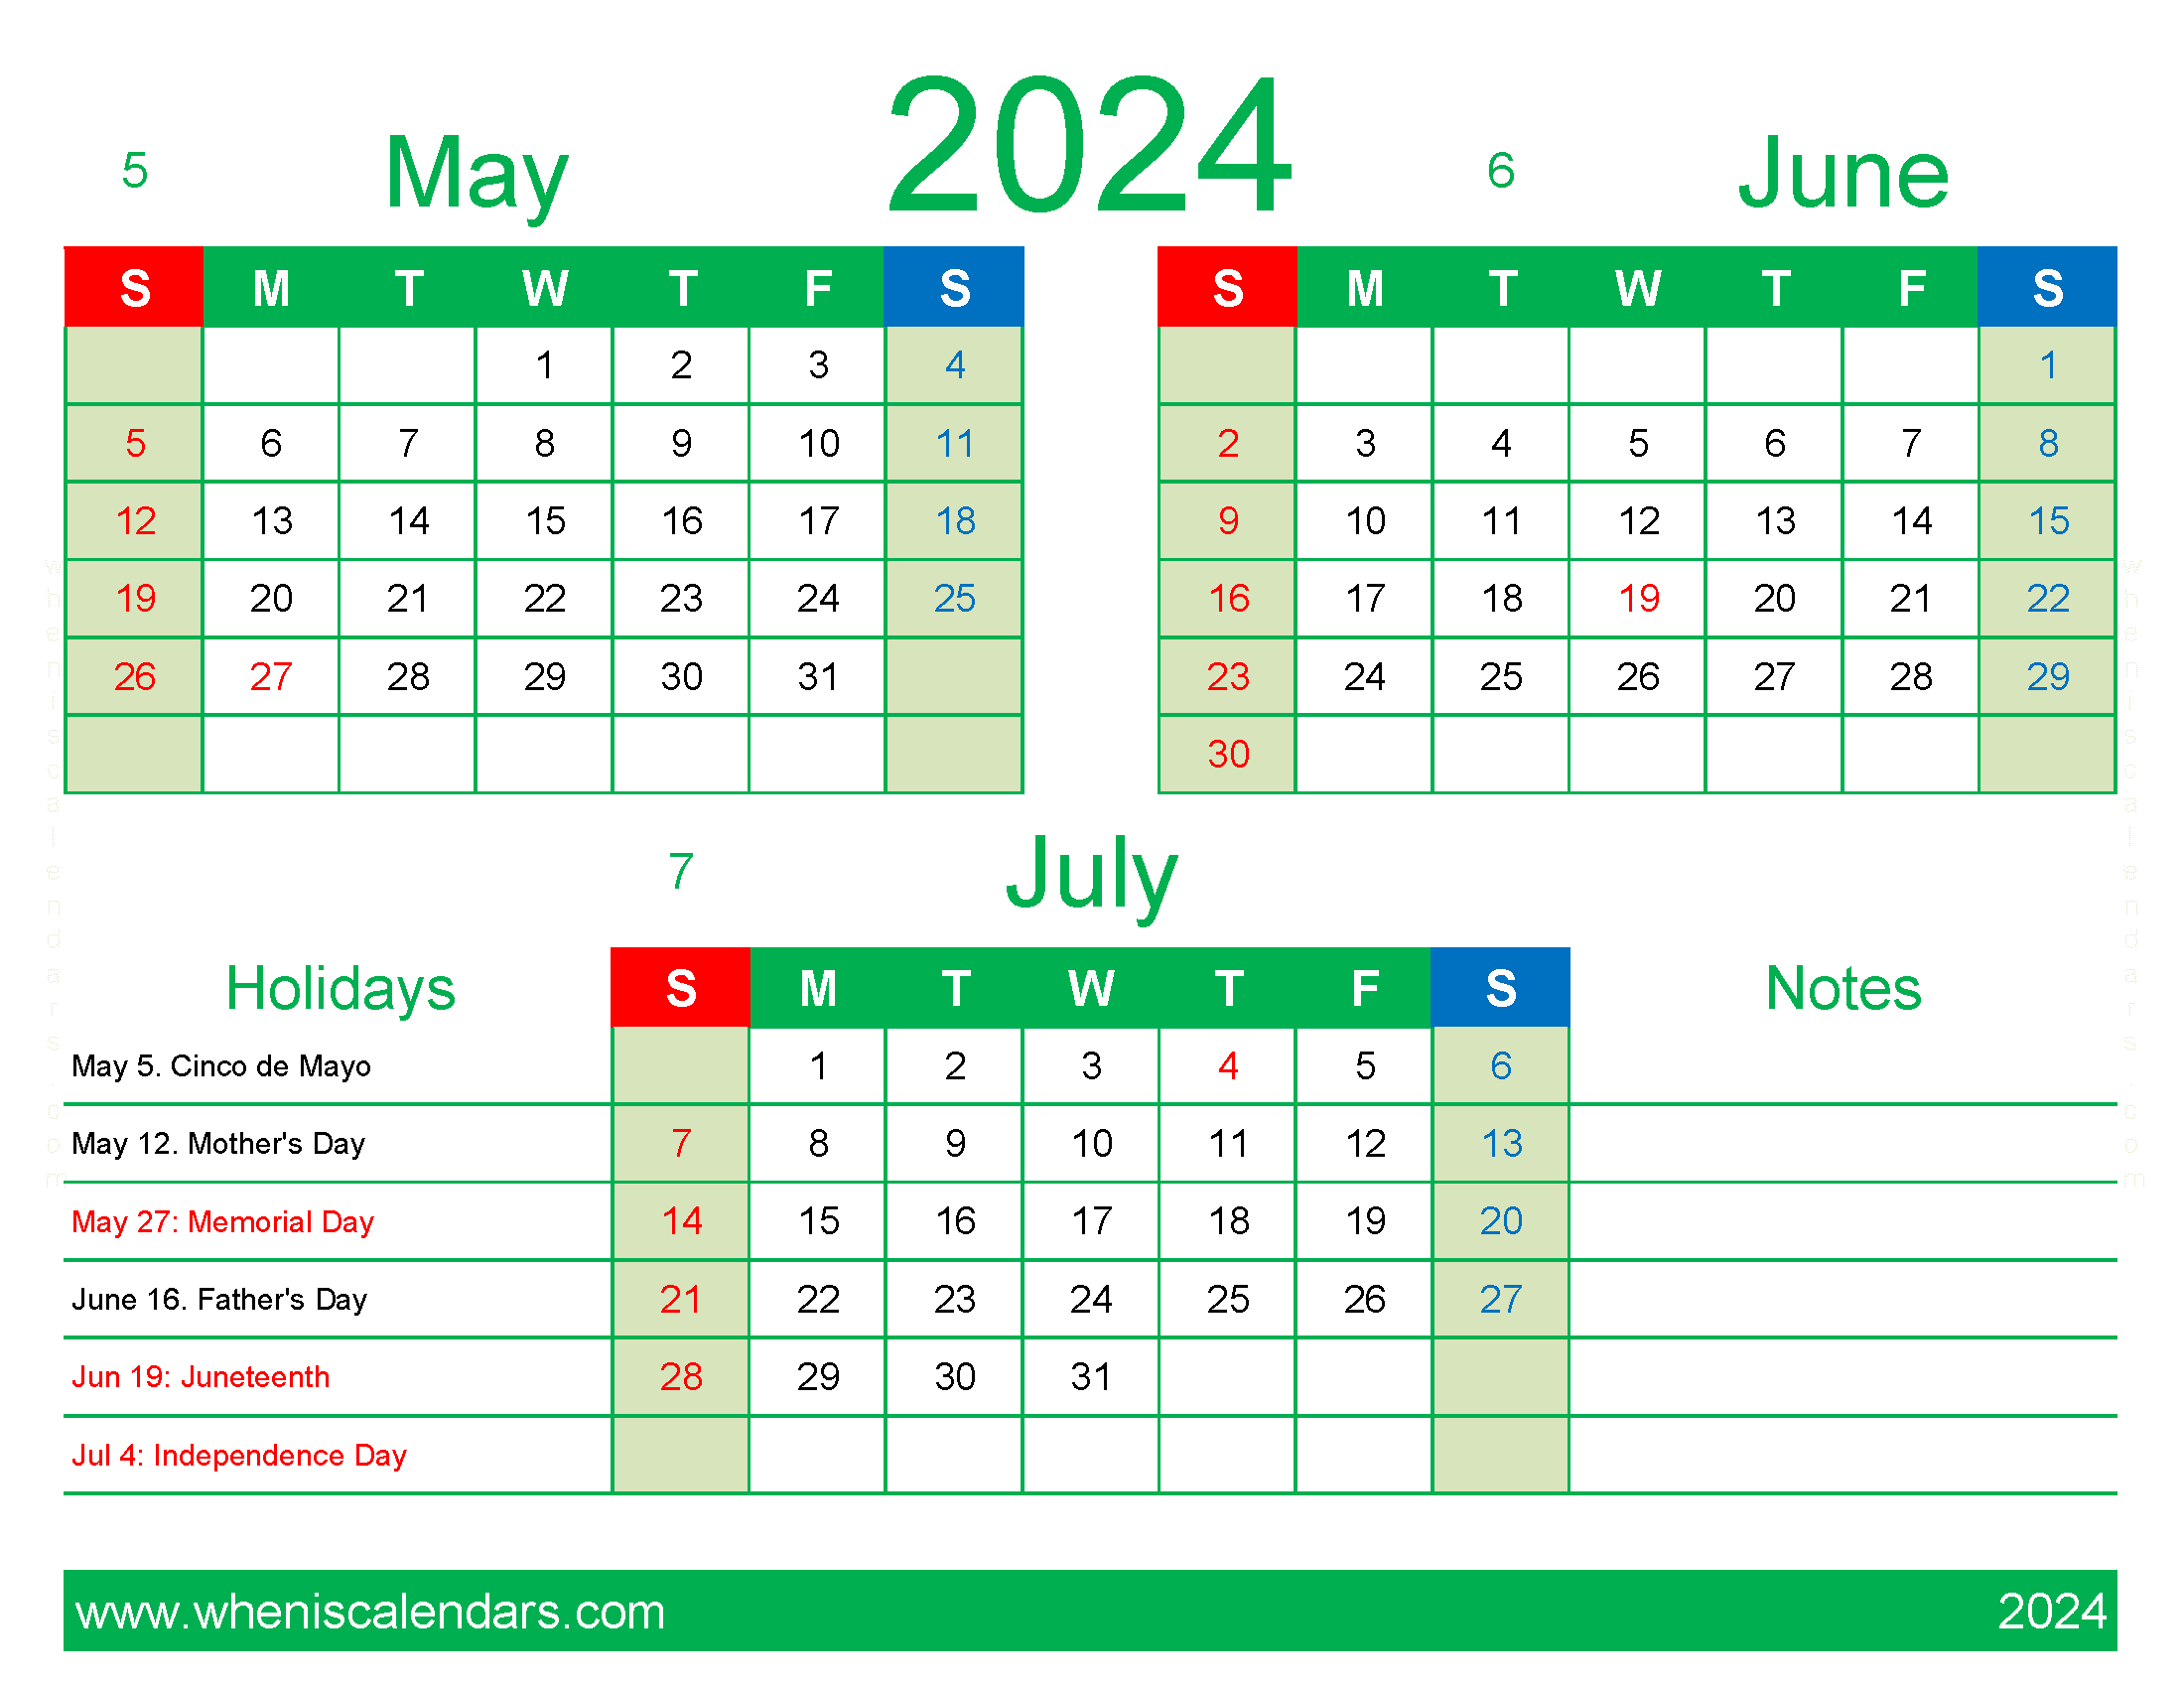 Download 2024 Calendar May June July MJJ410